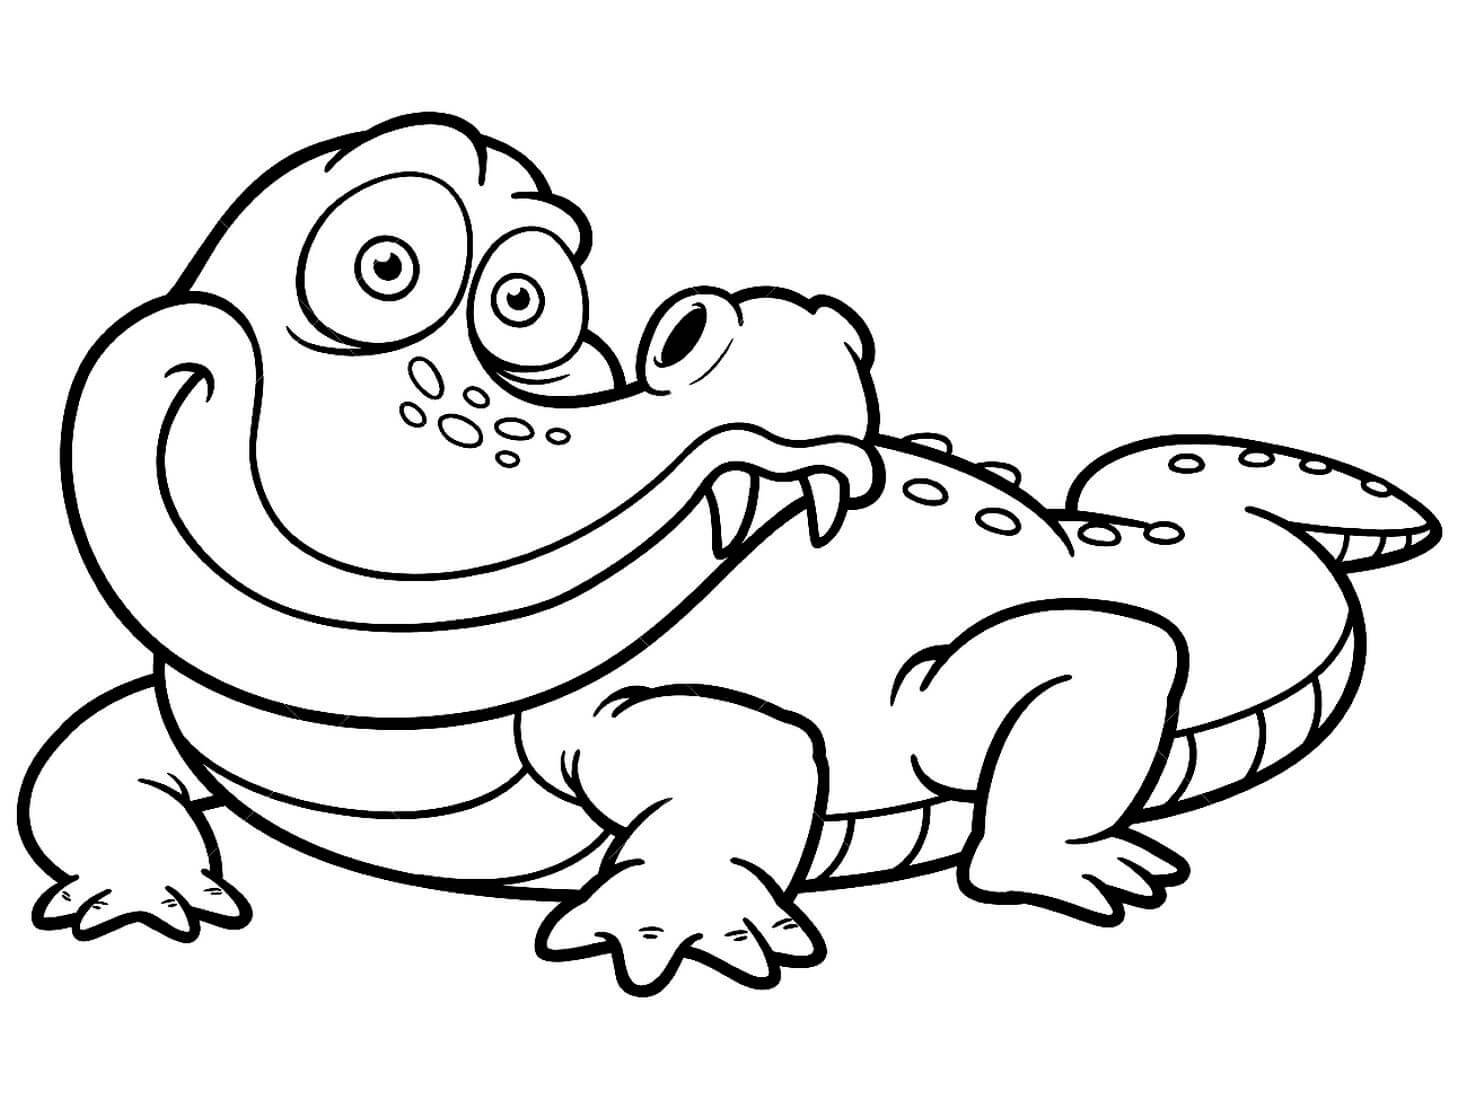 Крокодил раскраска для детей 4-5 лет